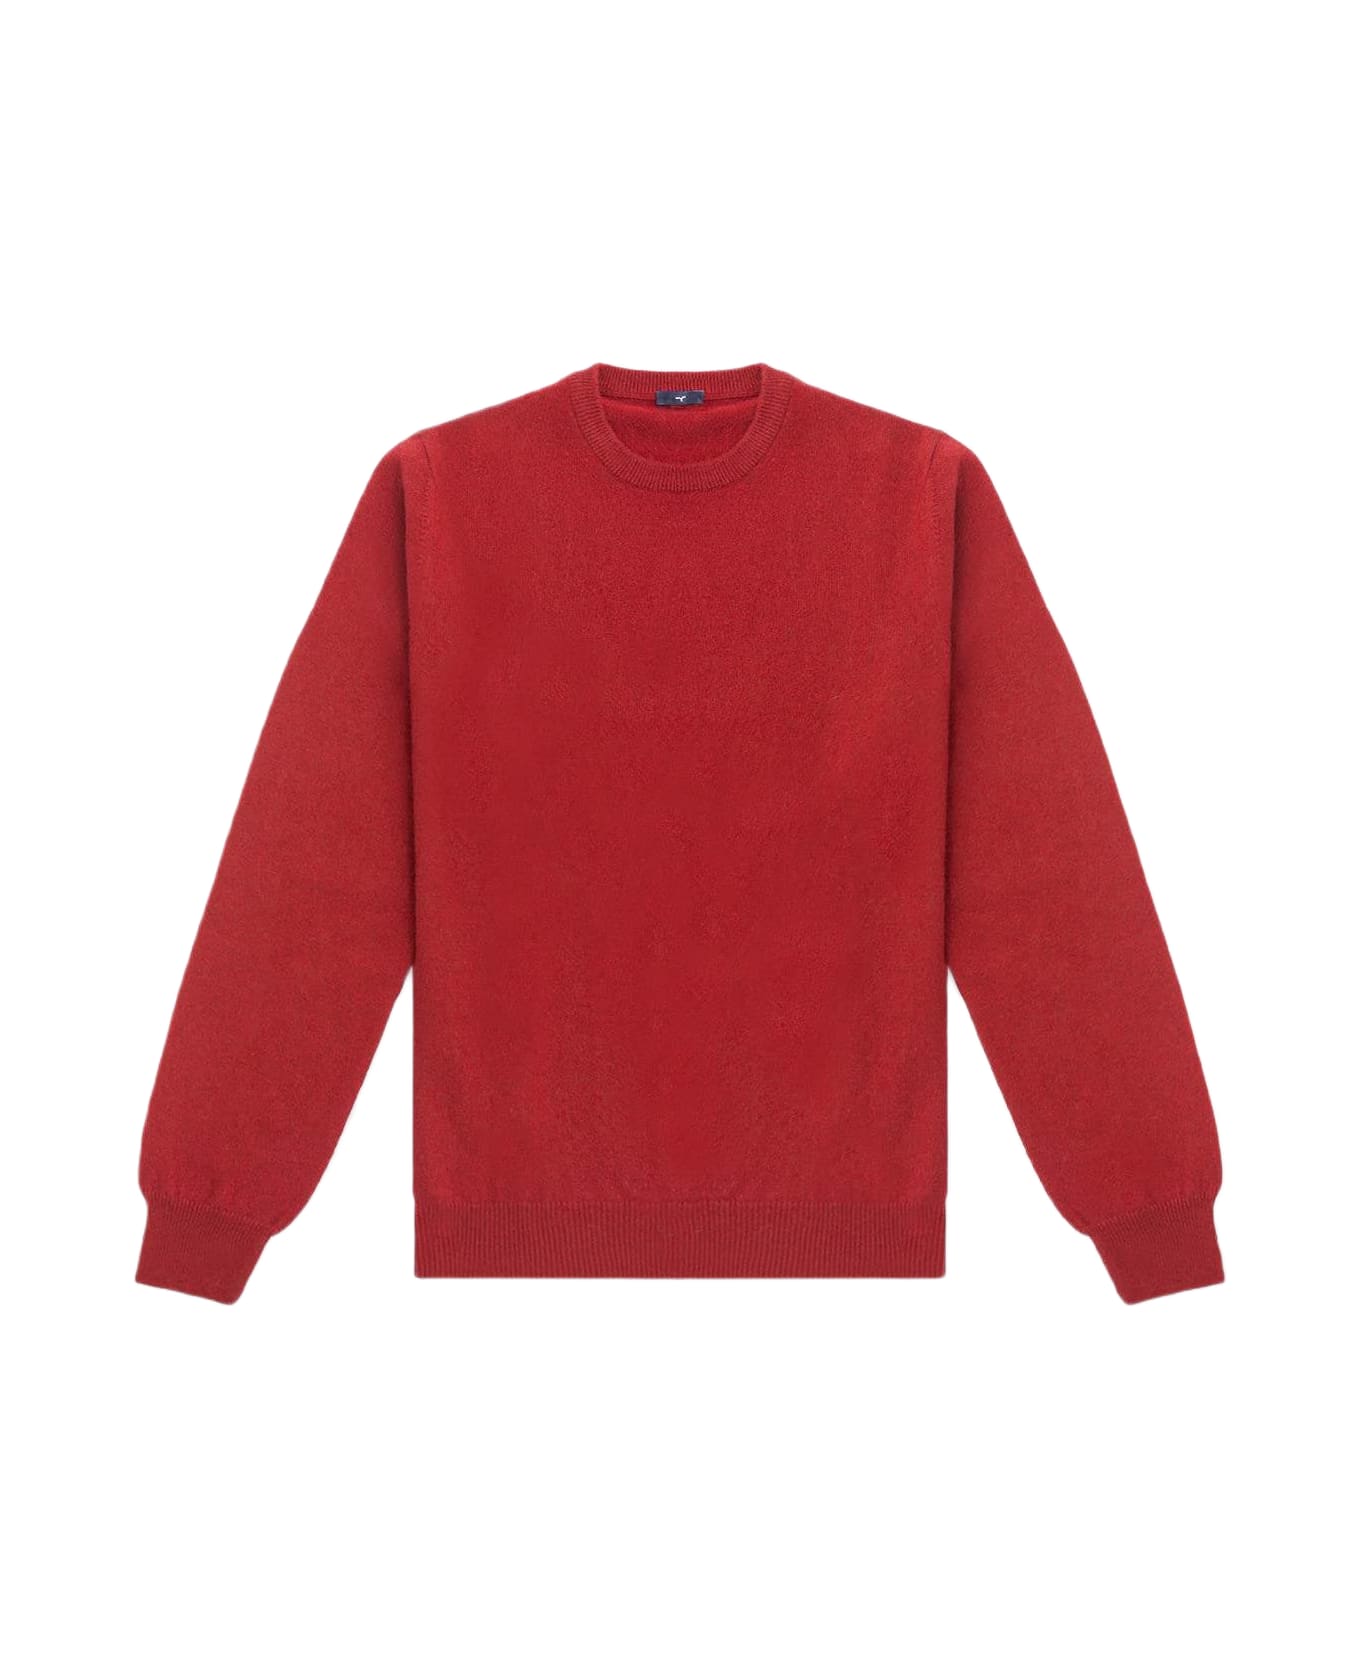 Larusmiani Crewneck Sweater Aspen Sweater - Red